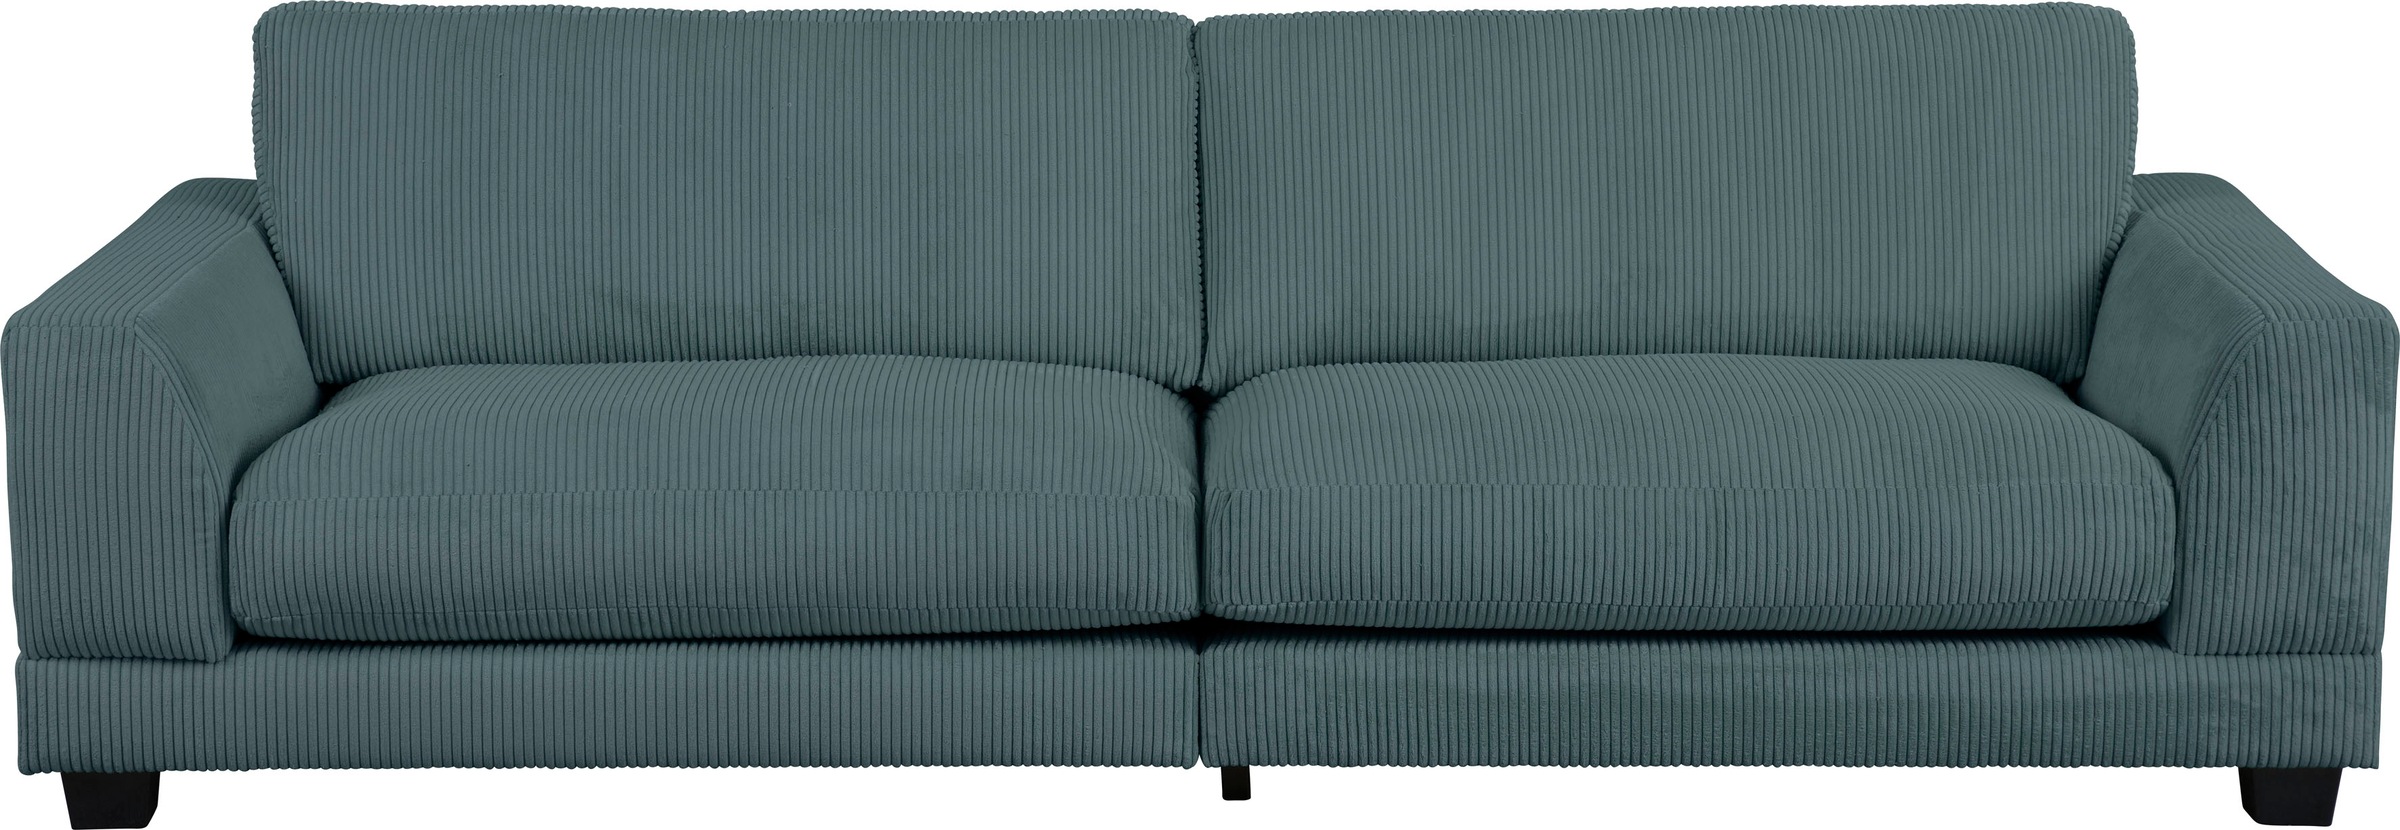 Home affaire 3,5-Sitzer »Parennes«, mit attraktivem Cord-Stoff, Breite 254 cm, Tiefe Sitzfläche 62 cm